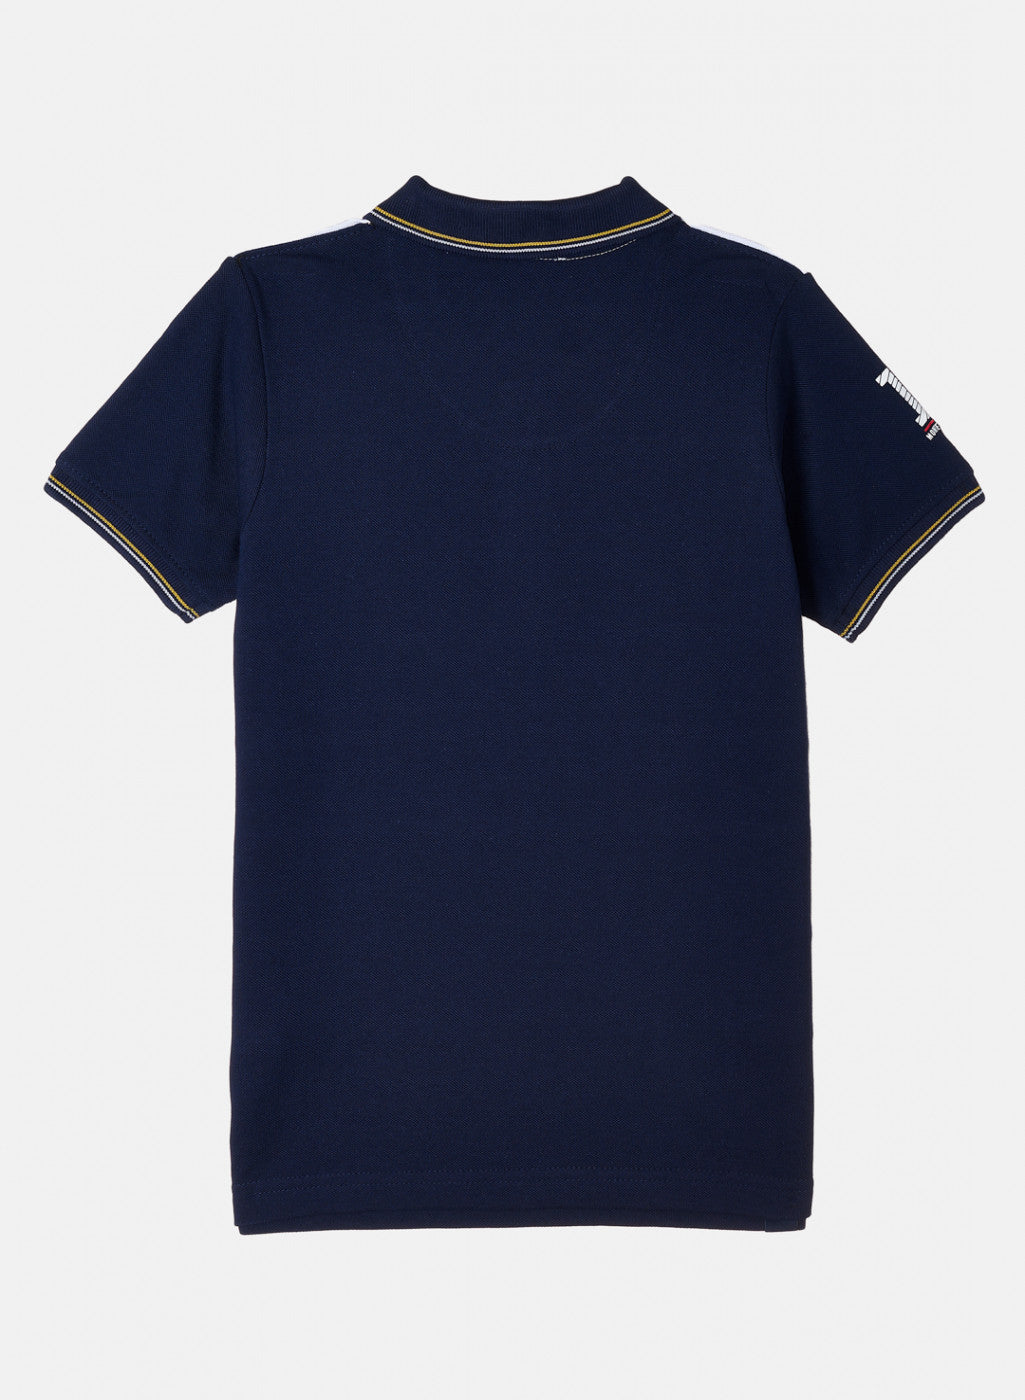 Boys Navy & White Stripe T-Shirt